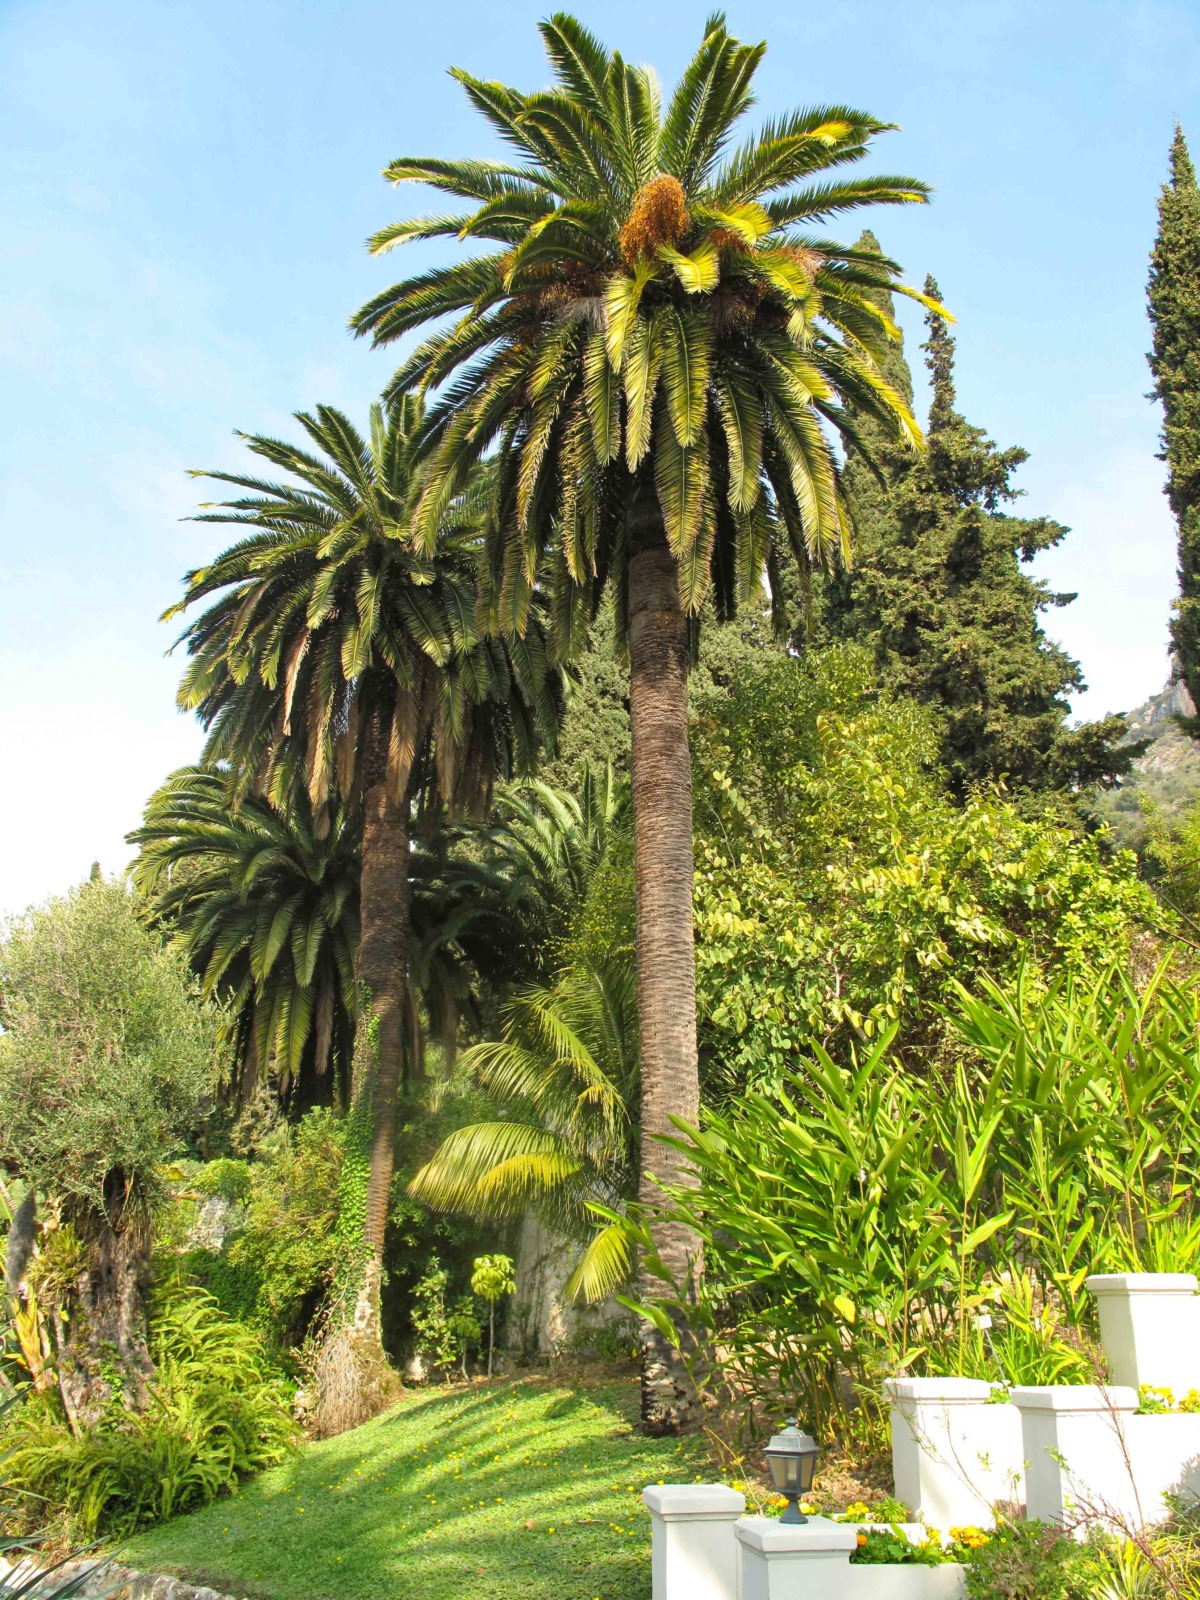 Menton's Parks and Gardens - Villa Serena. Photo: Tangopaso (Public Domain)